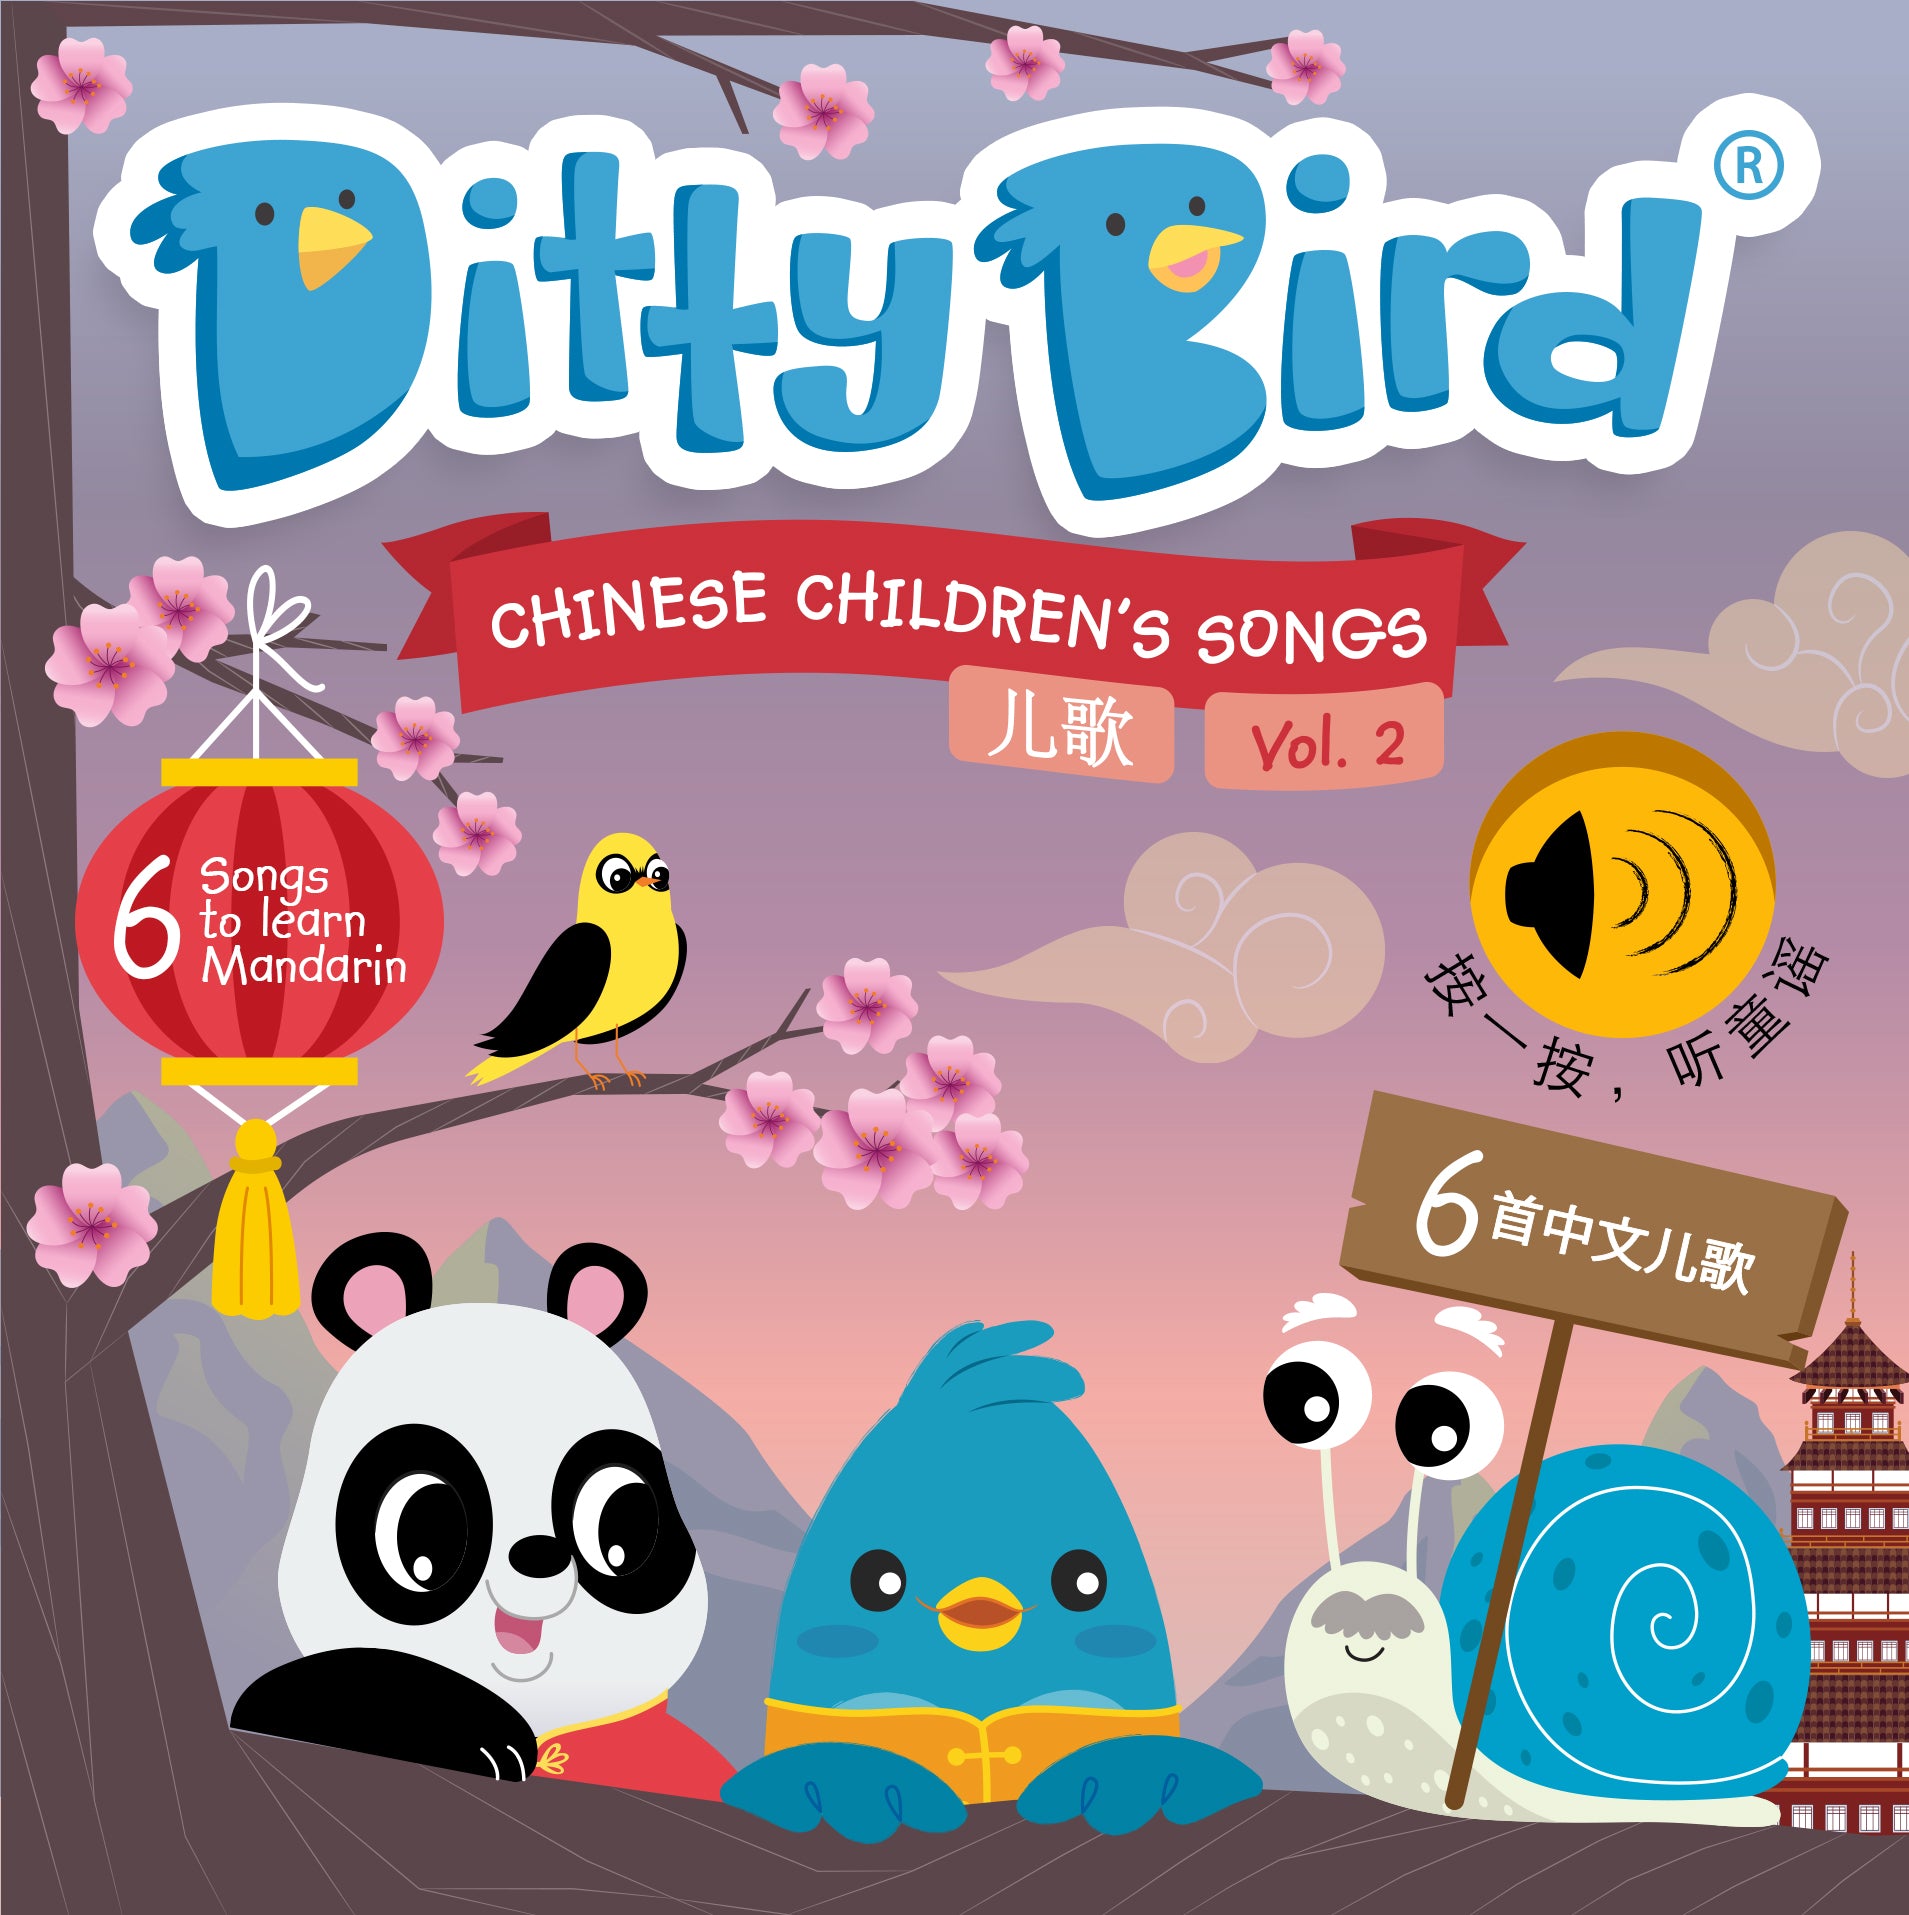 Ditty Bird - CHINESE CHILDREN'S SONGS in Mandarin Vol.2